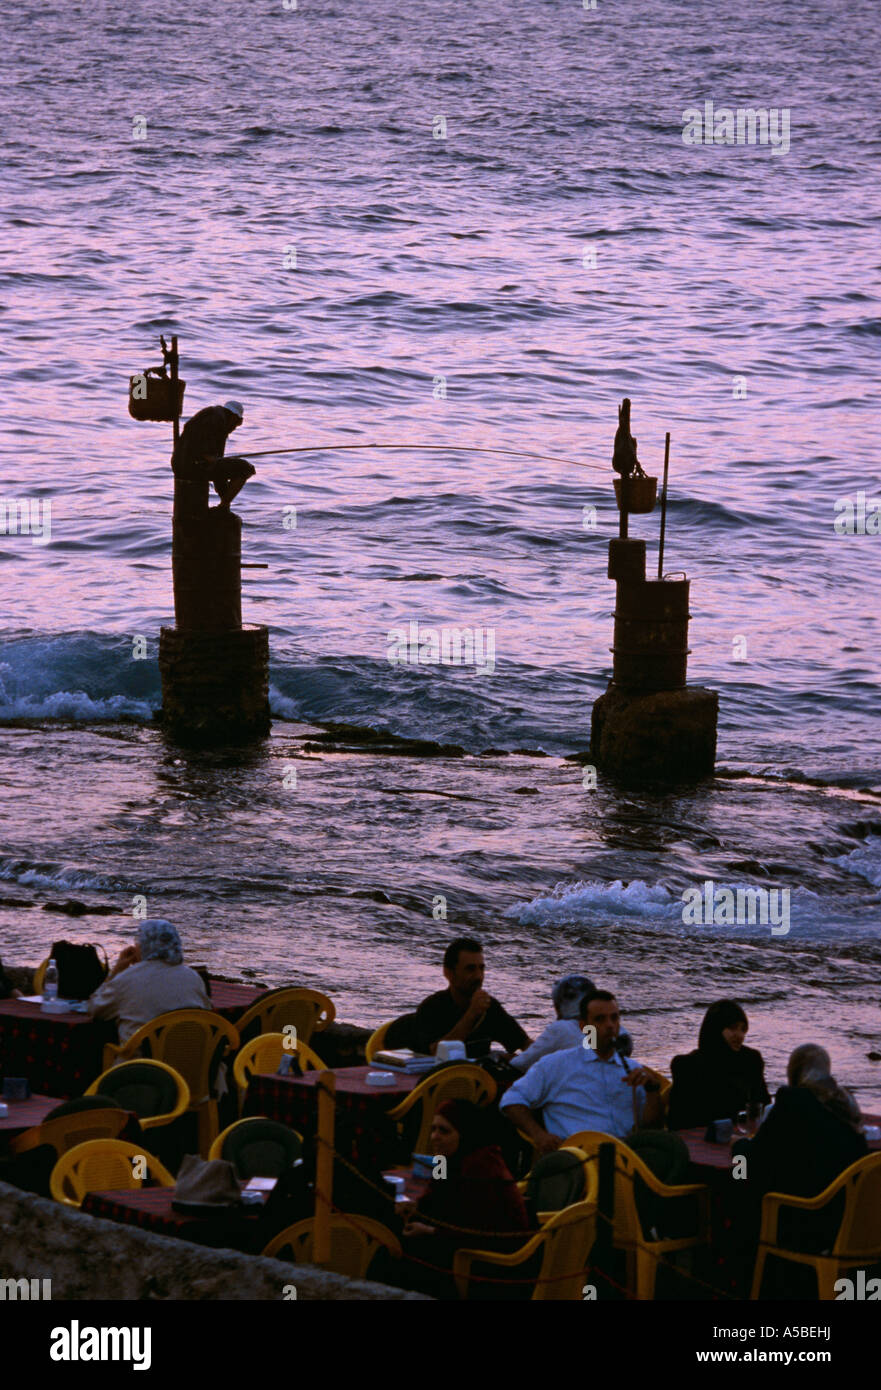 Fishermen at La corniche Beirut Stock Photo